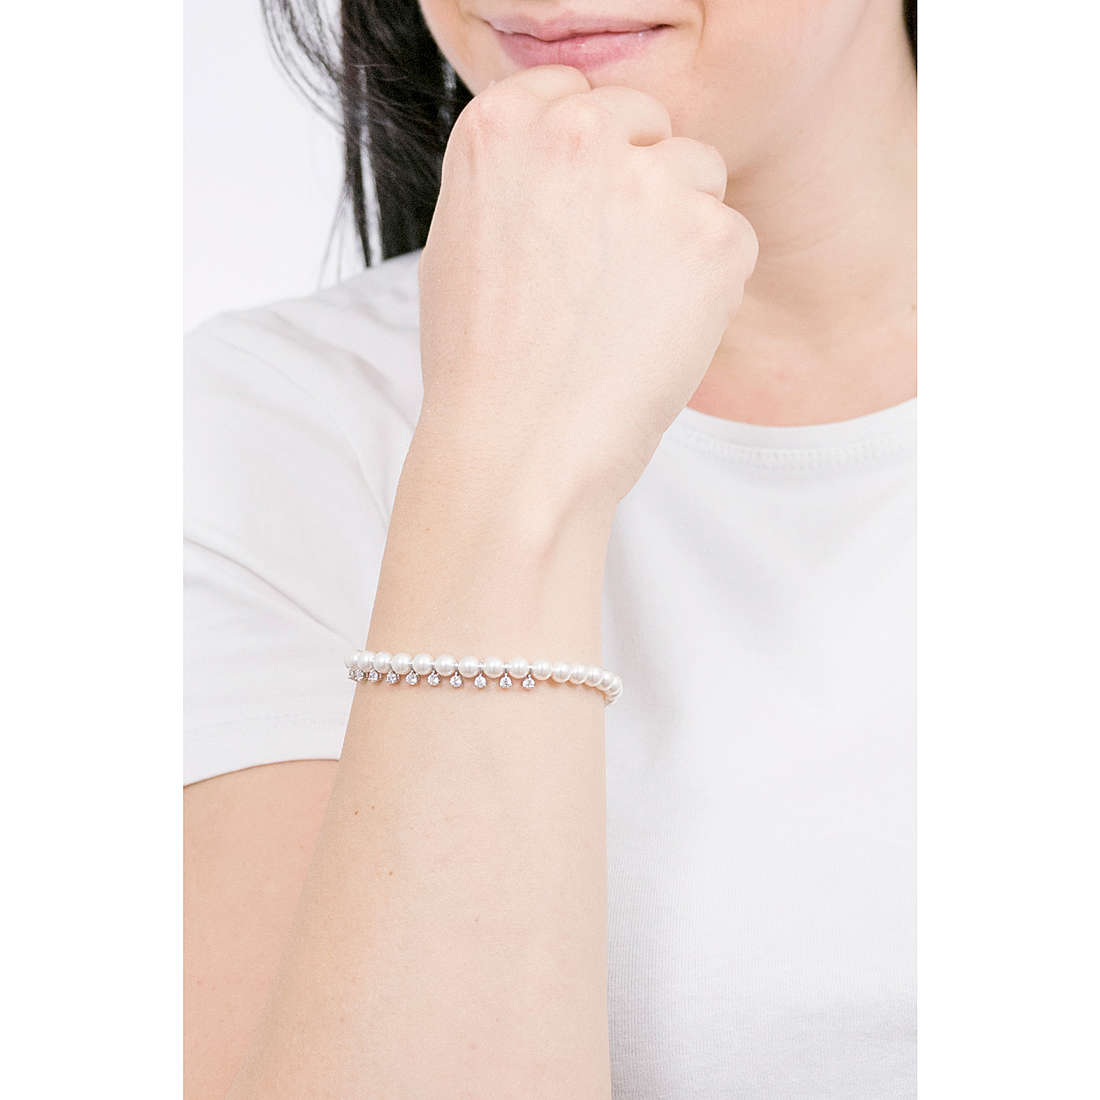 Swarovski bracelets Treasure woman 5563291 wearing